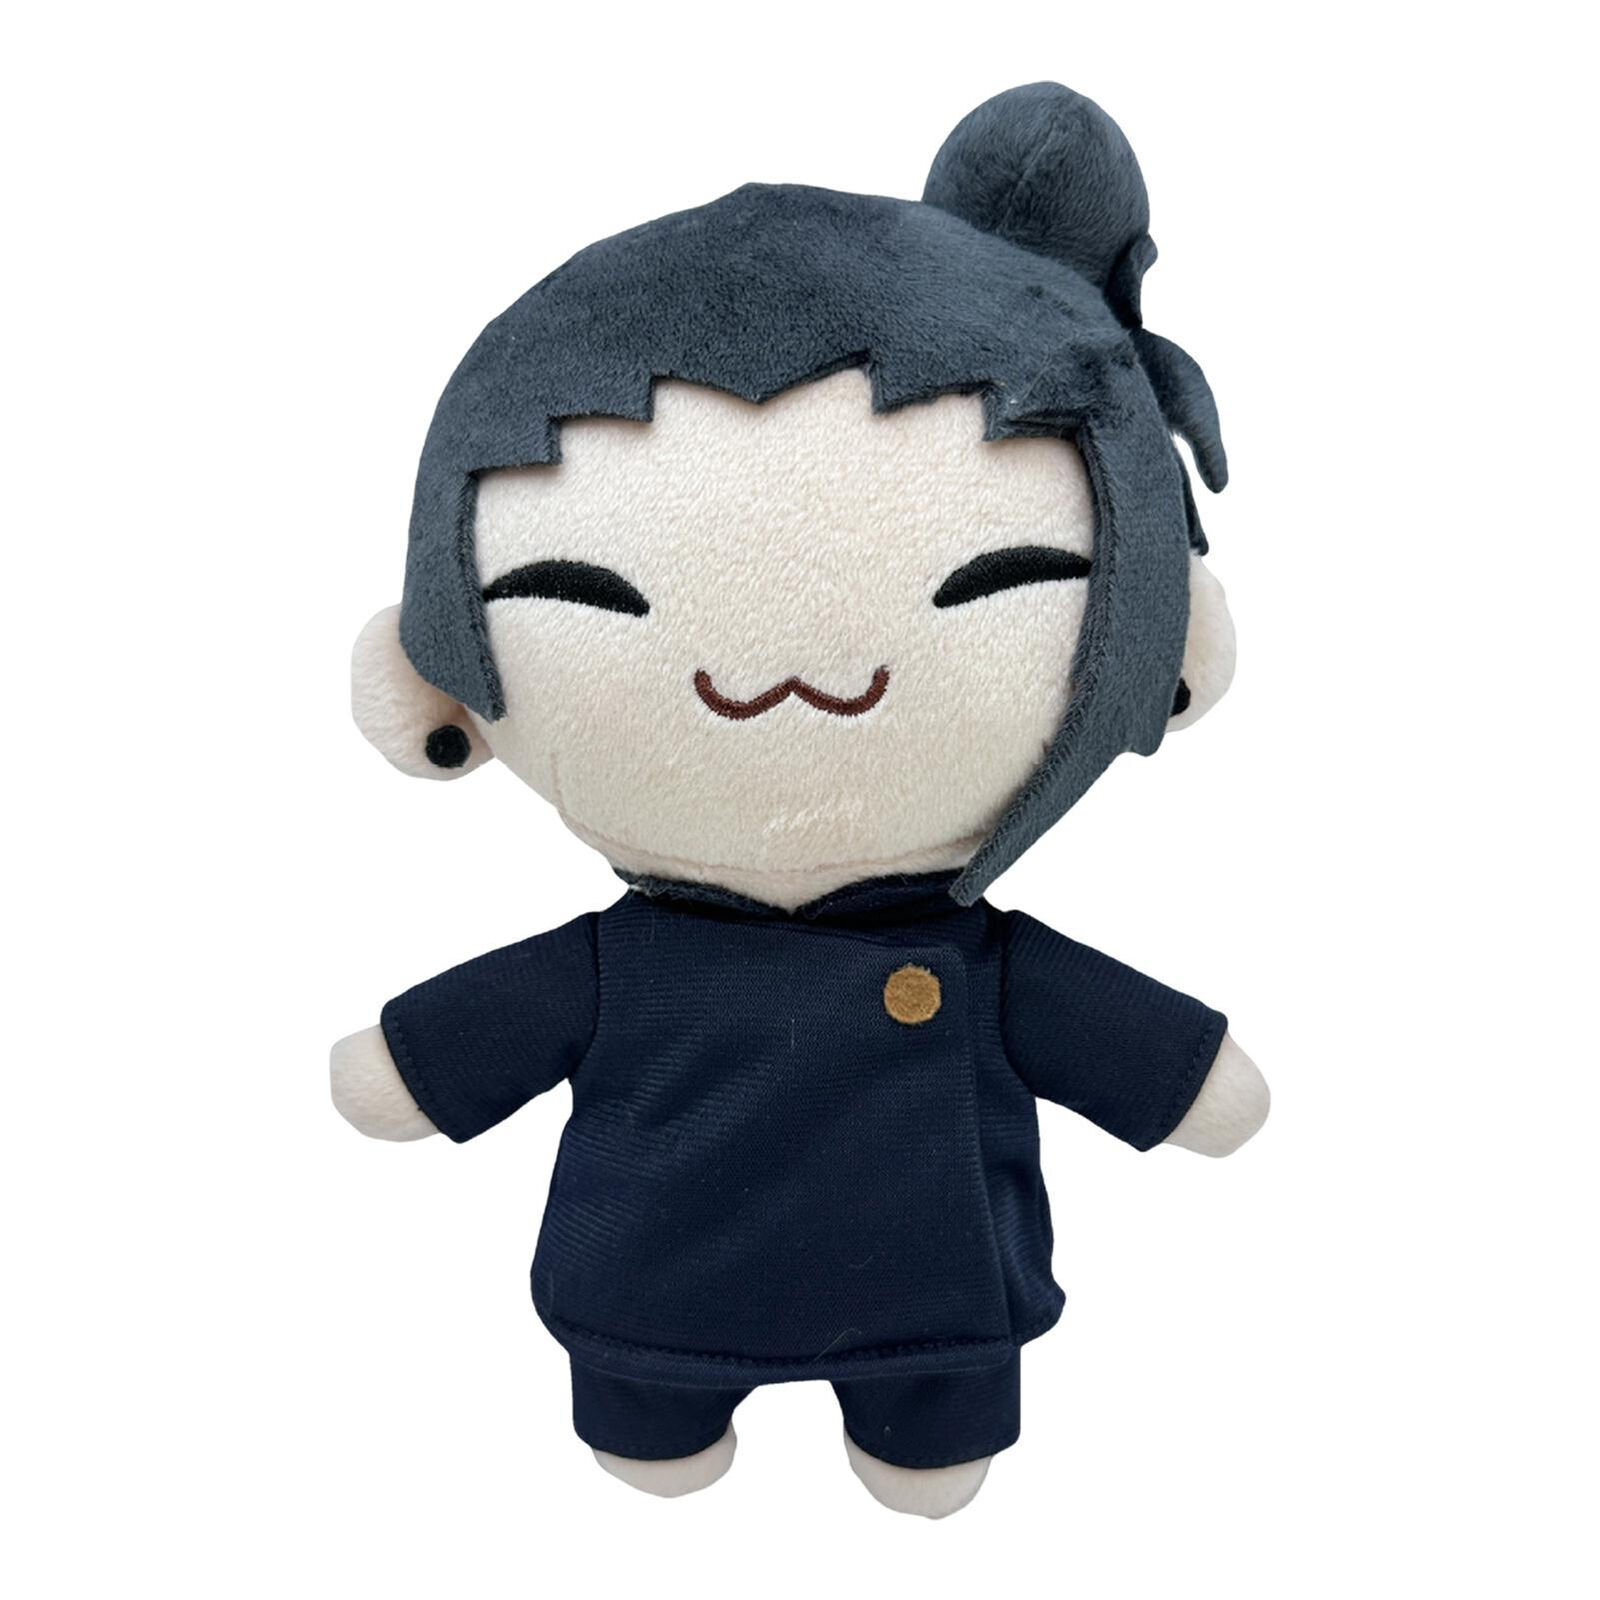 21cm Anime Jujutsu Kaisen Satoru Gojo Geto Suguru Plush Doll Stuffed Toy Gift-